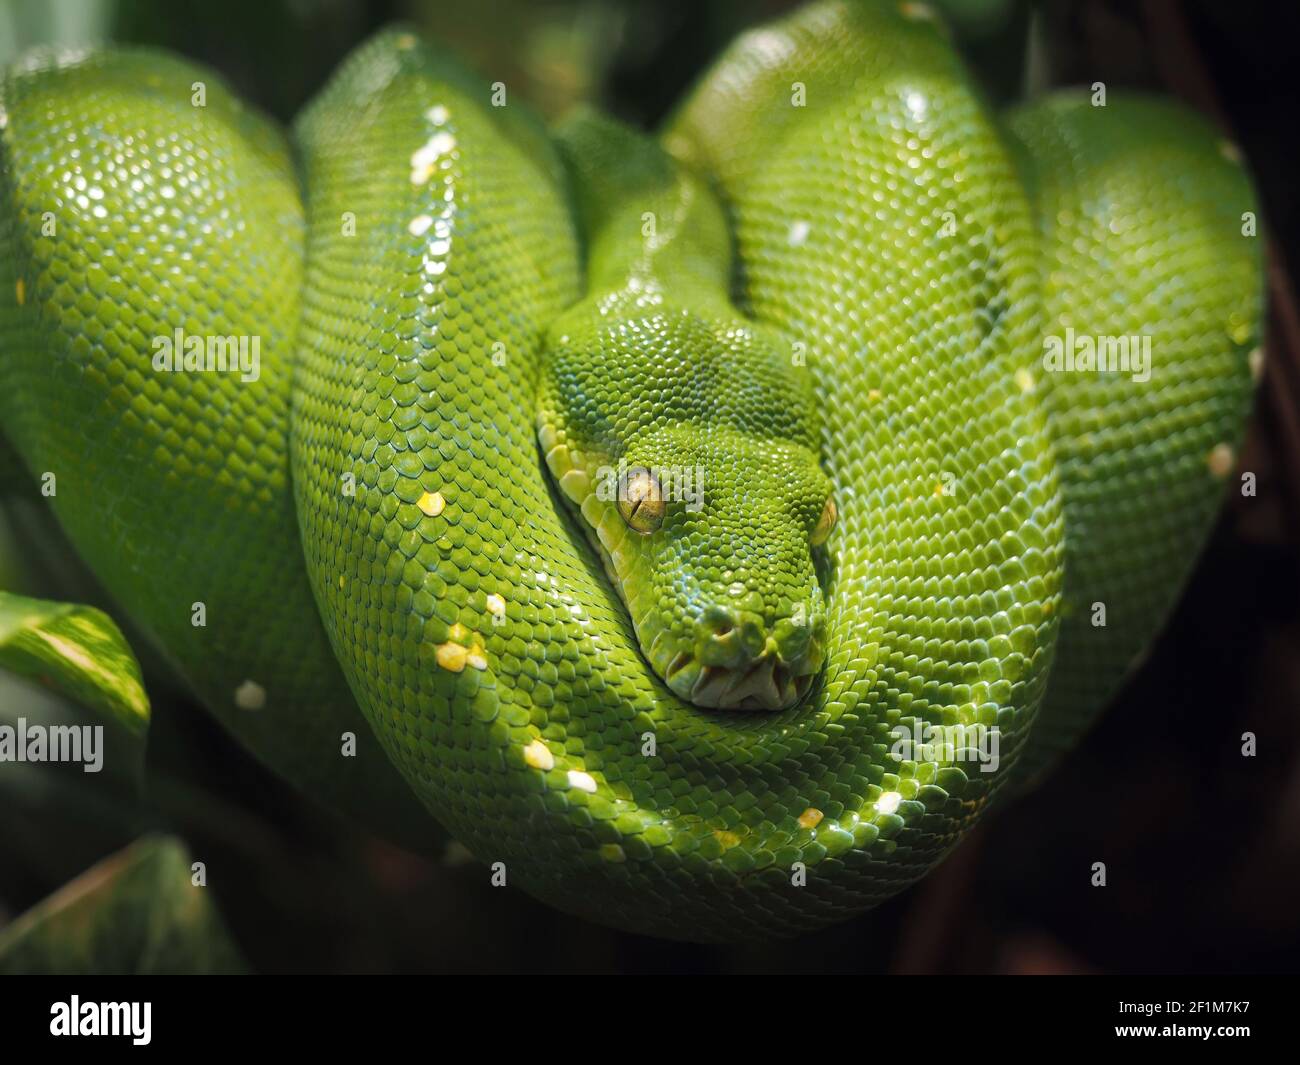 Le python vert (morelia viridis) s'enroule confortablement sur une branche d'arbre (espèce de serpent de la famille des pythonidae). Zoo de Paris. Banque D'Images